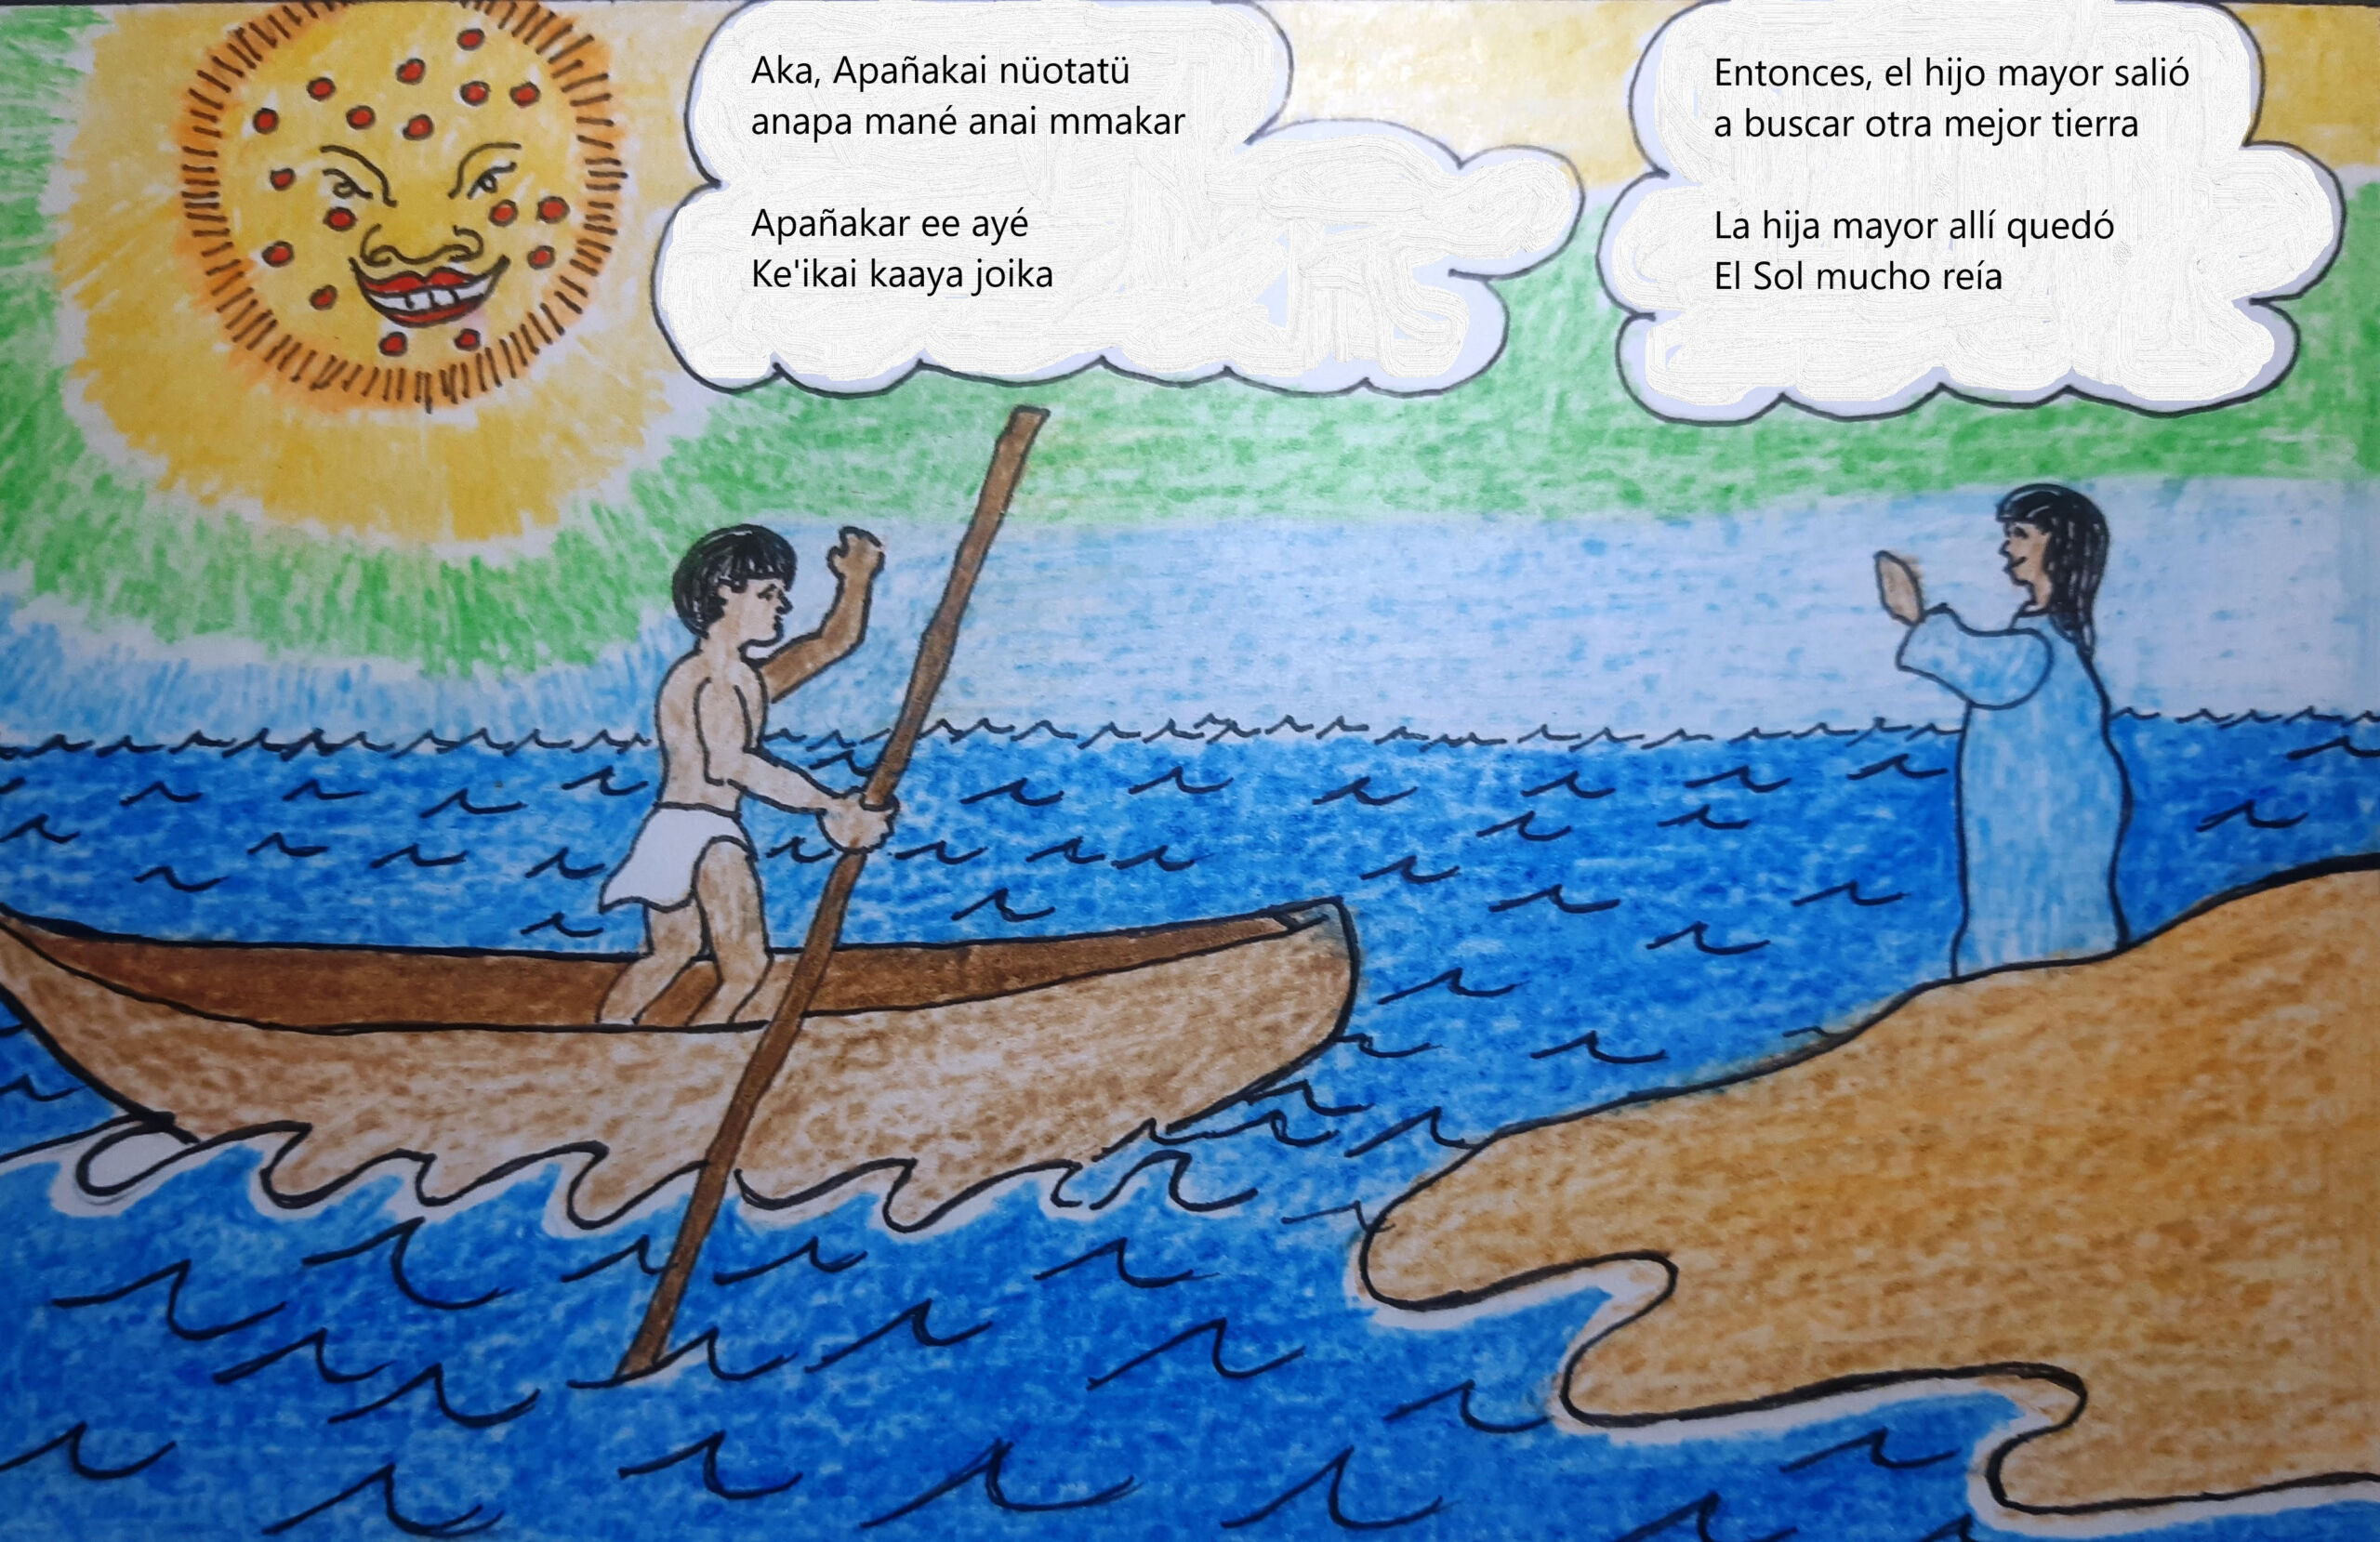 Desenho mostra indígena em canoa dizendo adeus a indígenas em terra.